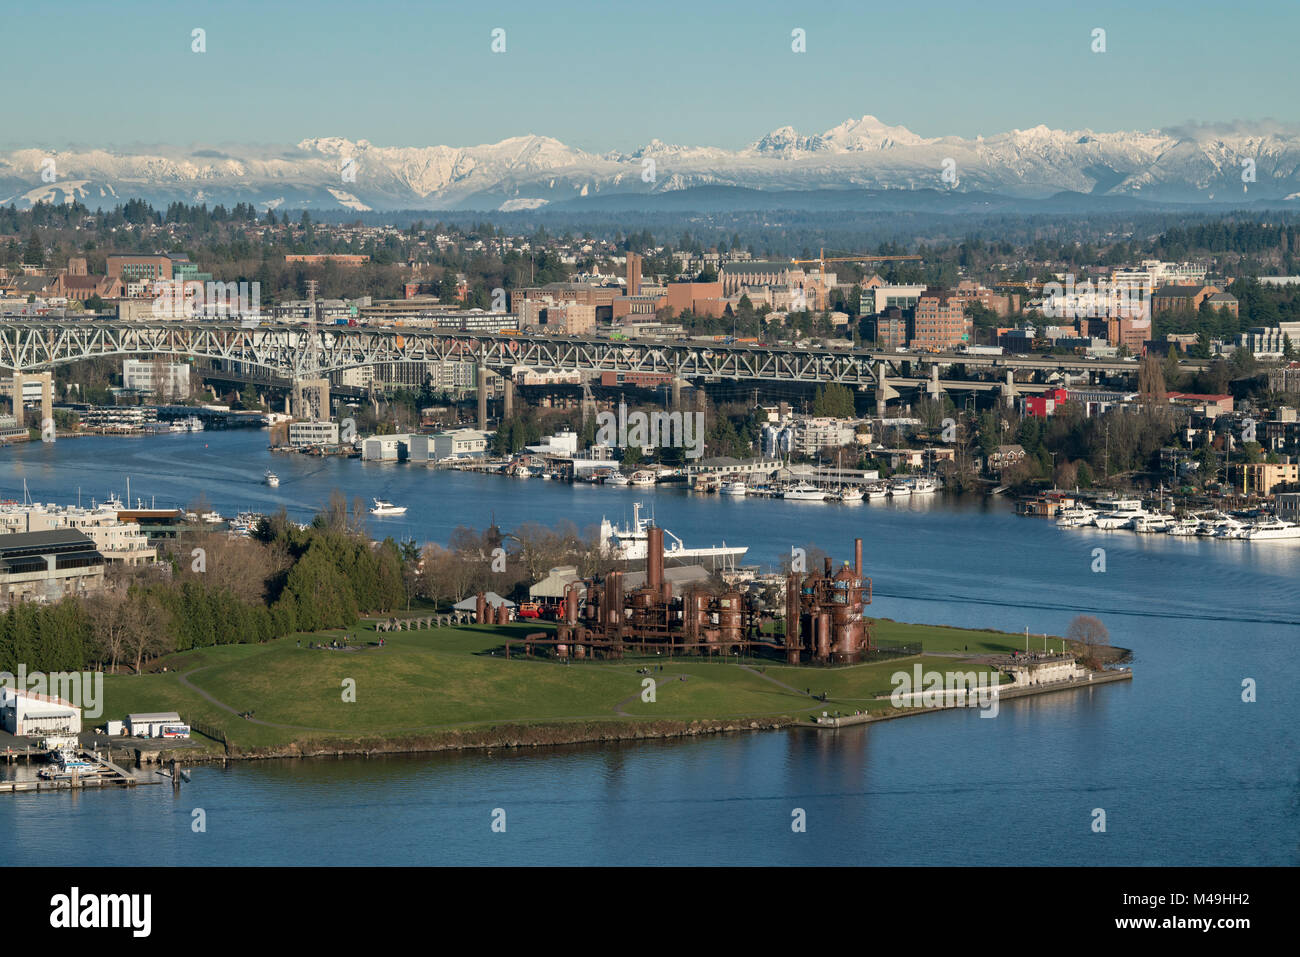 Gas Works Park, Lake Union and the University of Washington, Seattle, Washington Stock Photo